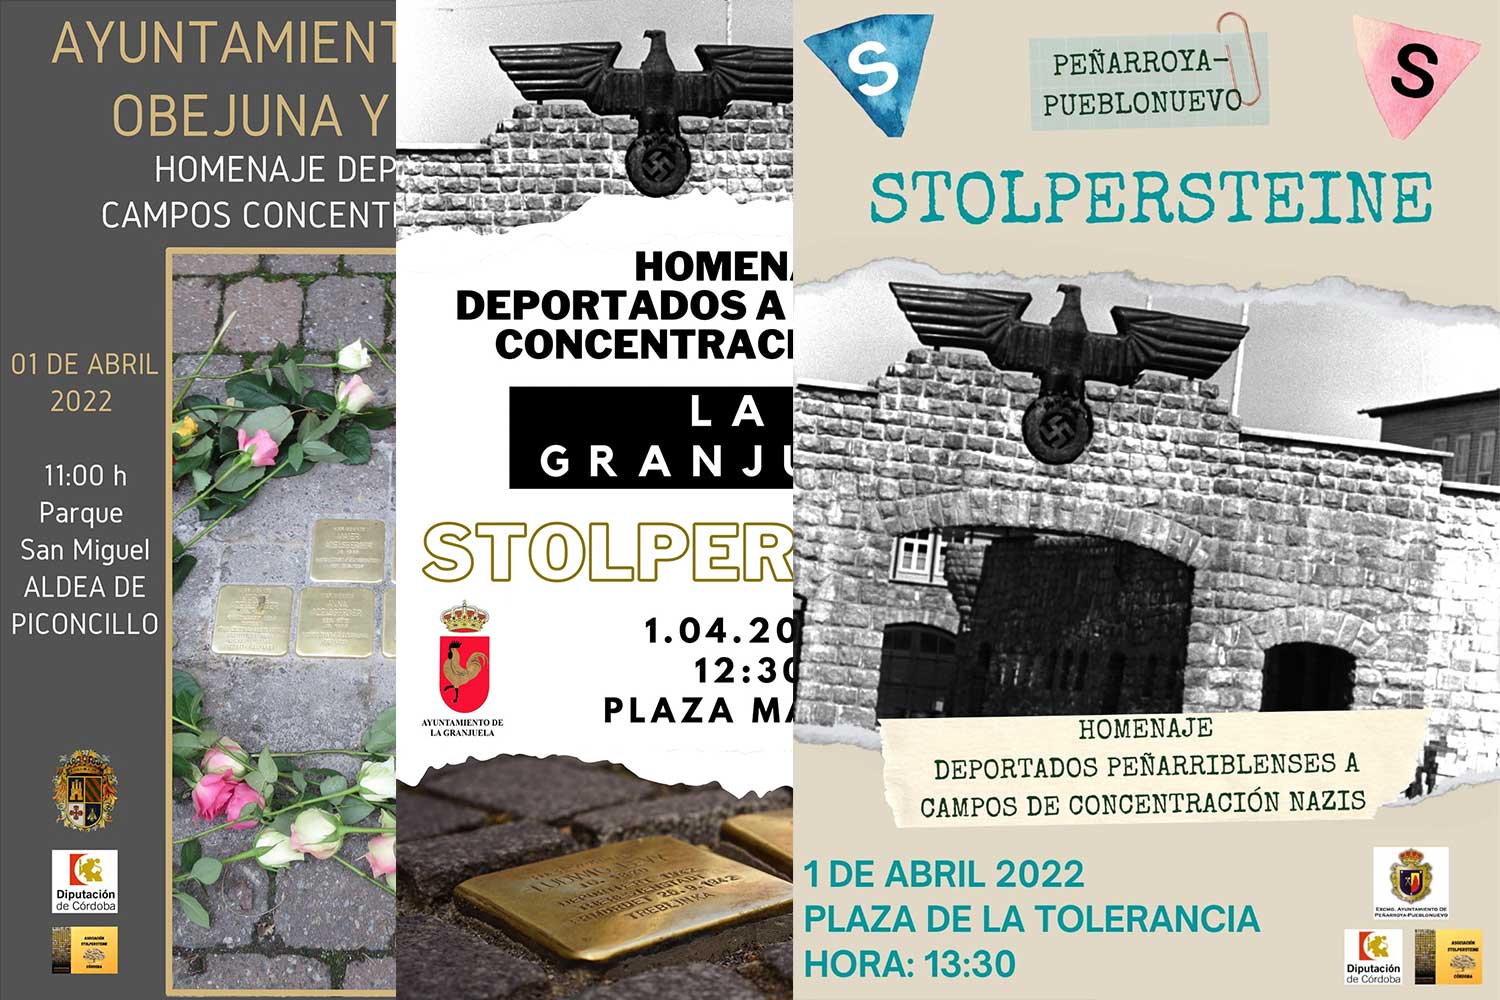 Fuente Obejuna, La Granjuela y Peñarroya Pueblonuevo homenajearán a sus vecinos deportados a campos de concentración nazis